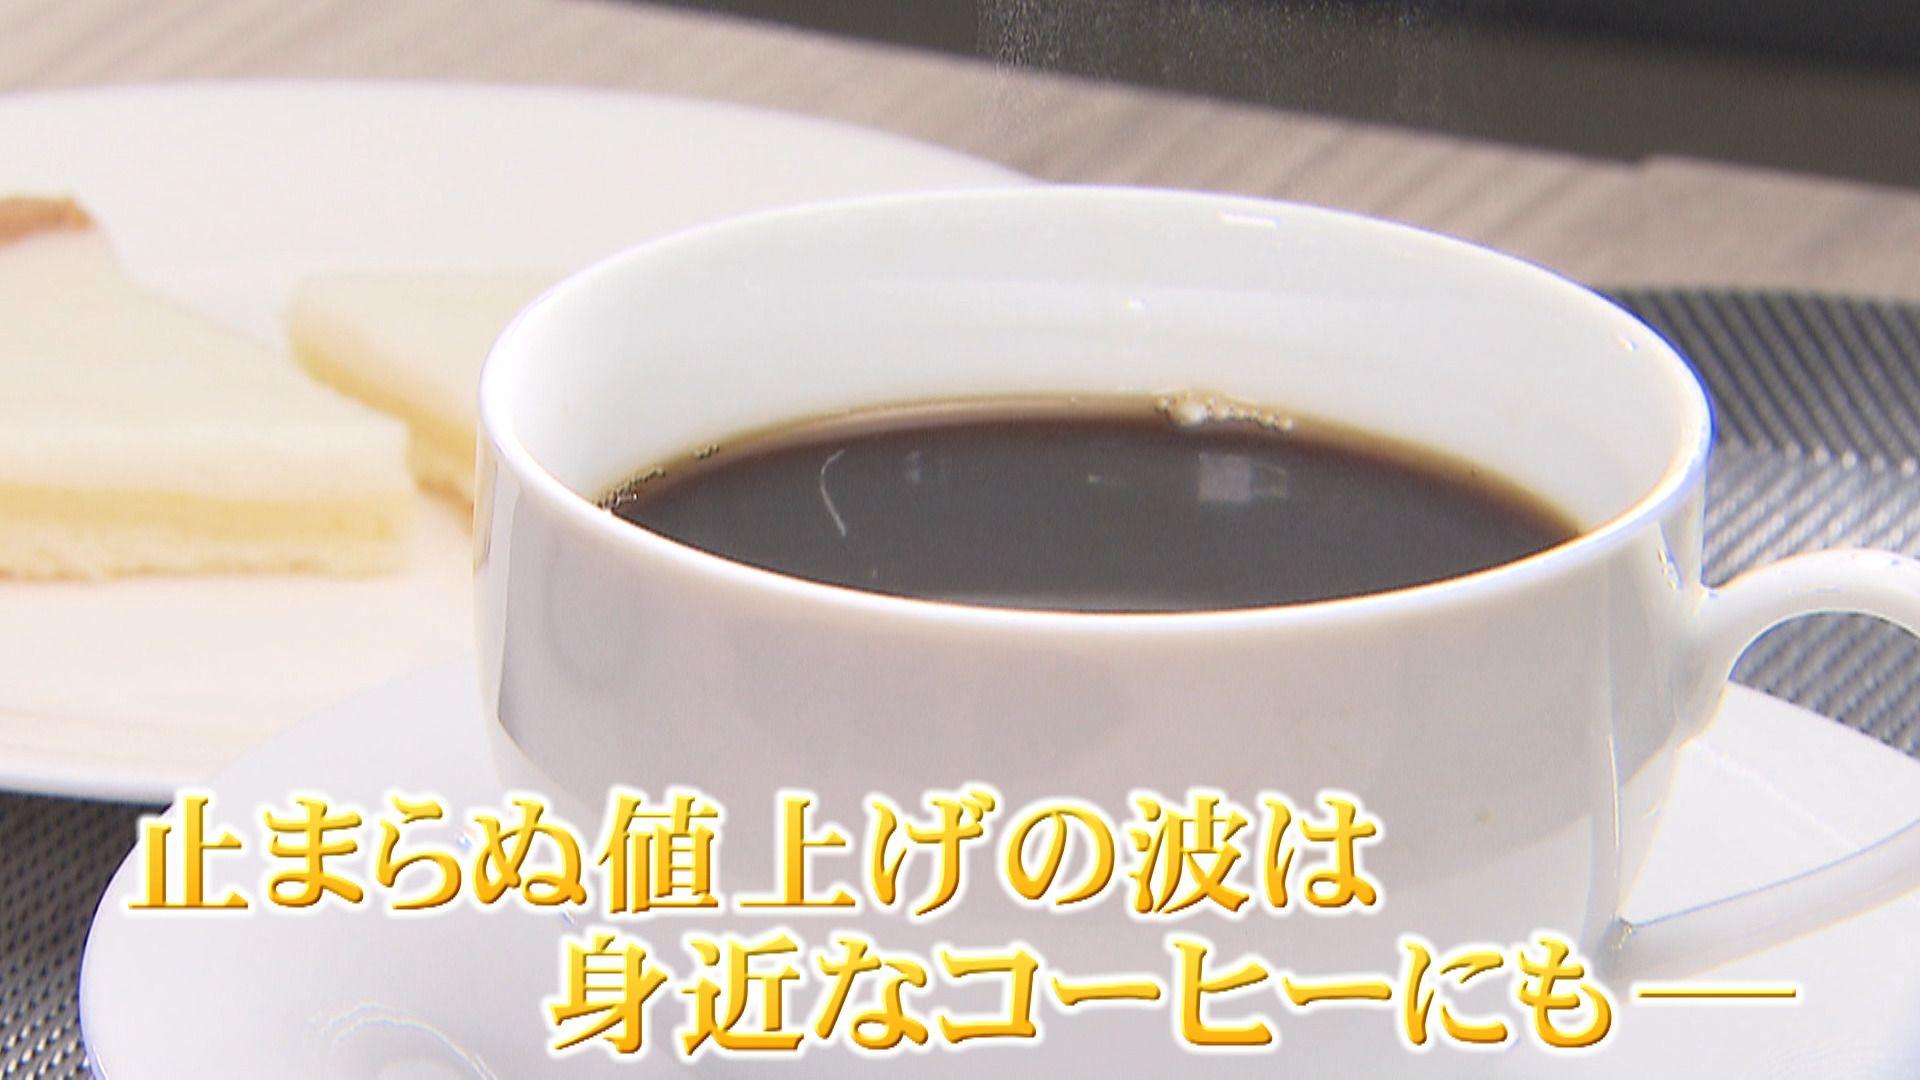 【高騰】コーヒー値上げ 喫茶店の倒産も相次ぐ　中国のドリアン人気とエルニーニョ現象が原因か